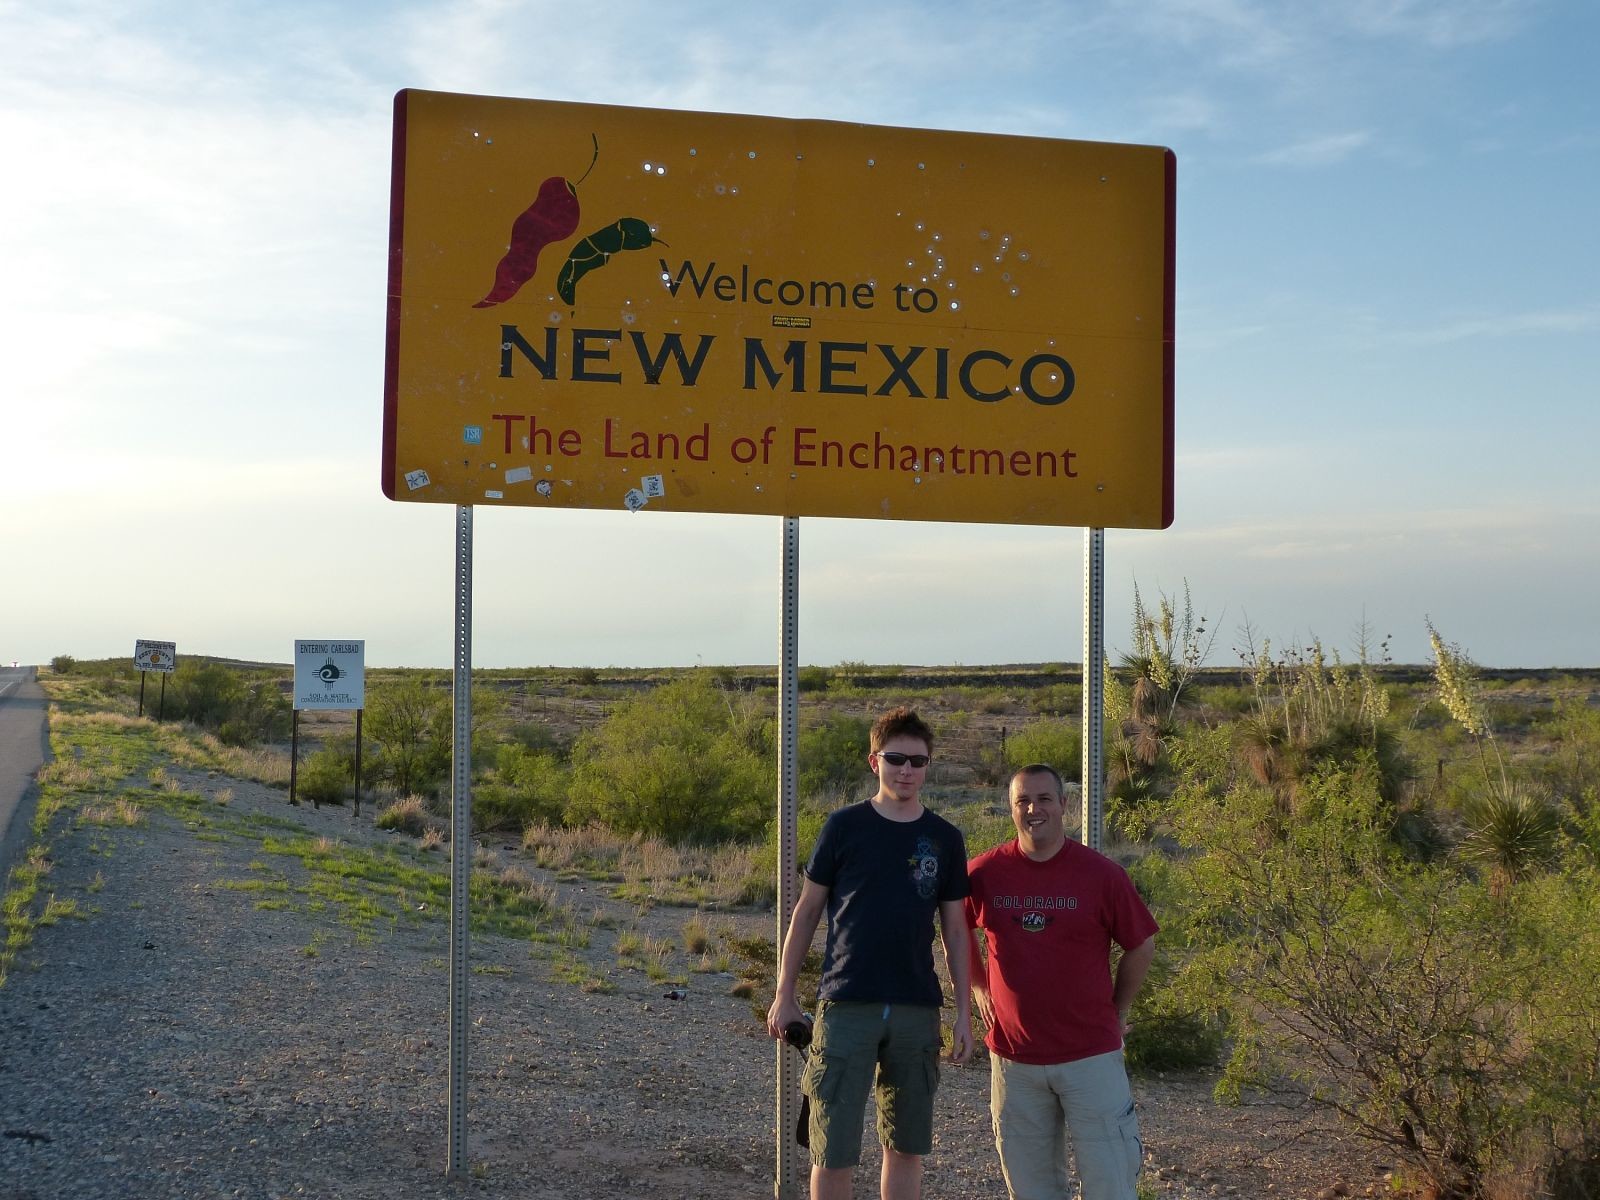 Entering New Mexico